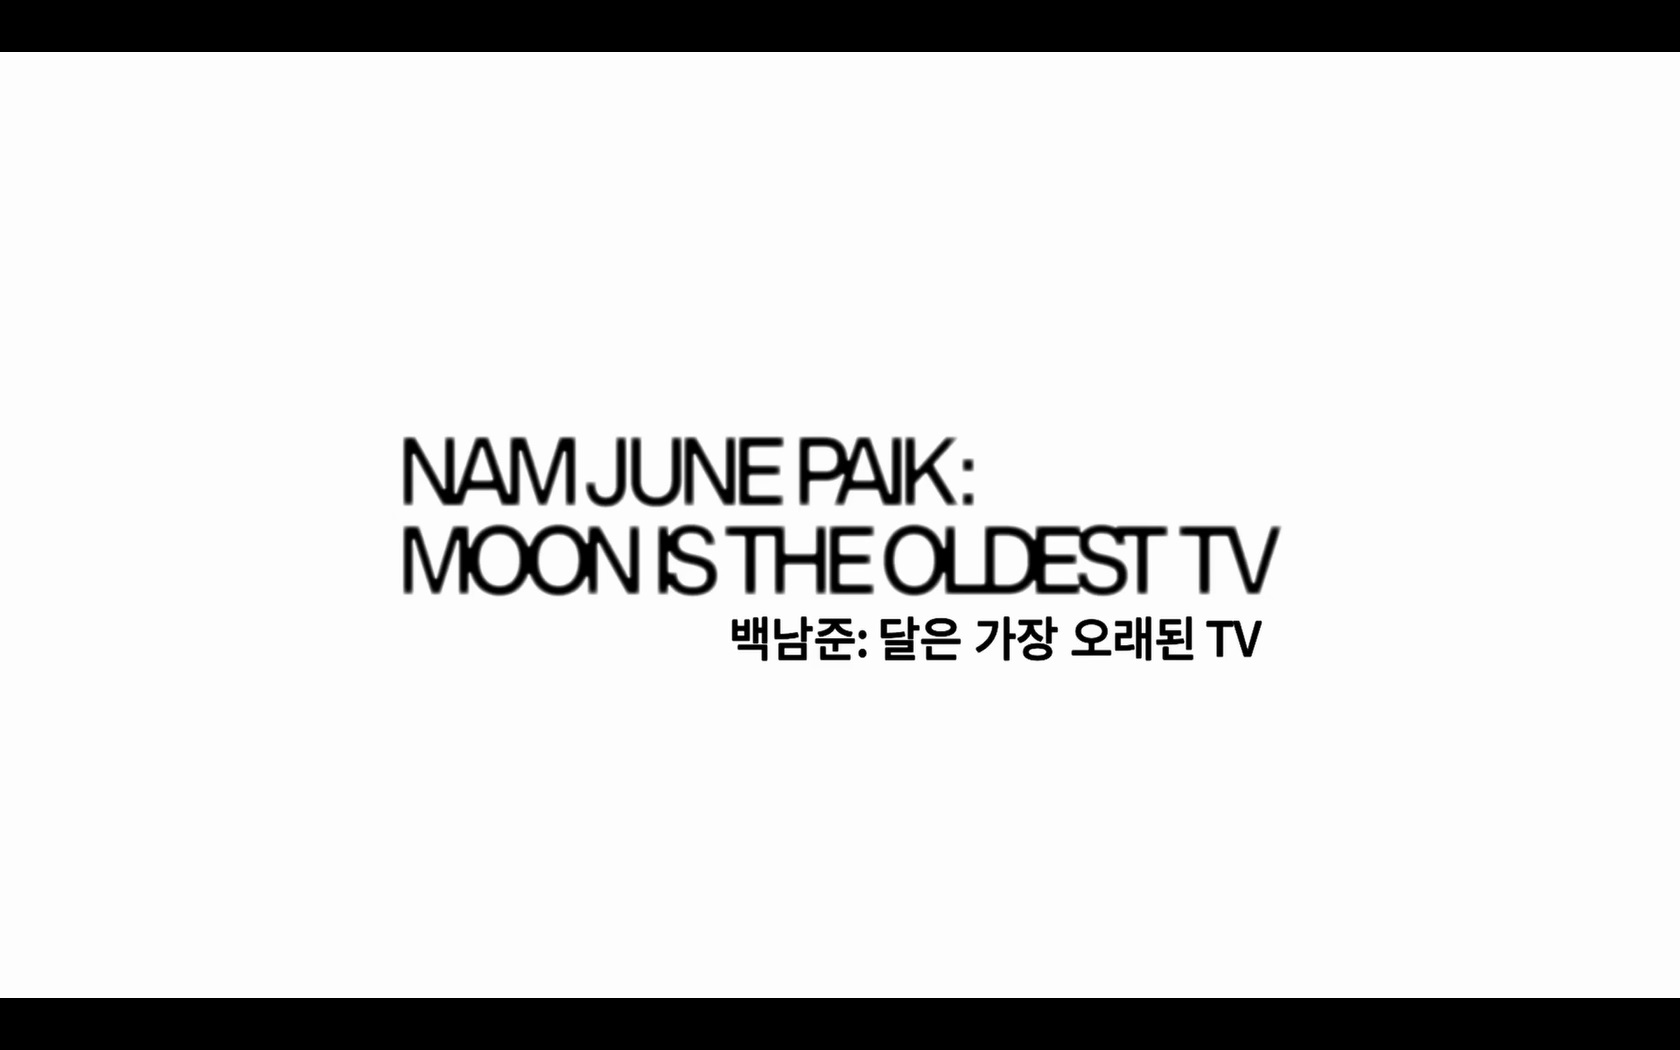 백남준: 달은 가장 오래된 TV[엔딩크레딧]